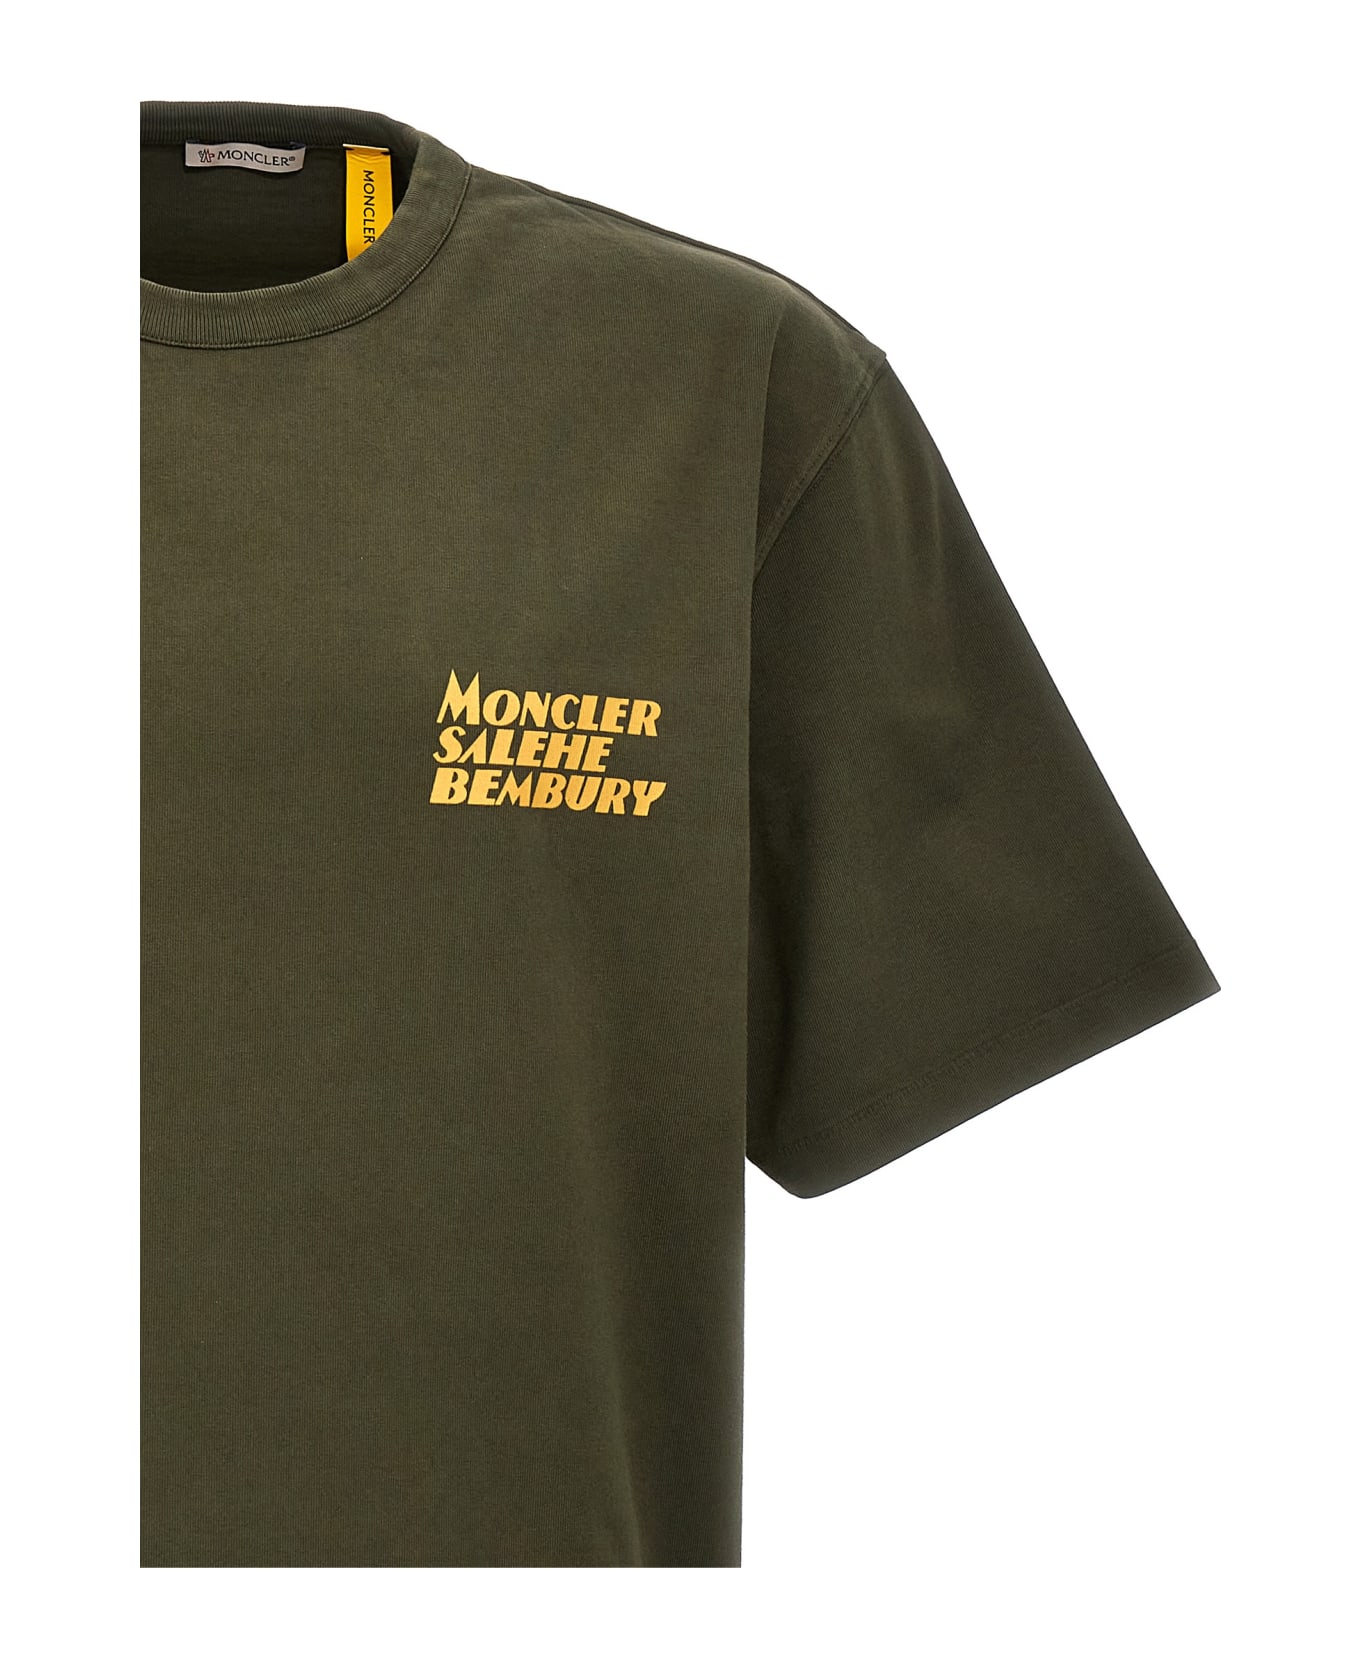 Moncler Genius T-shirt Moncler Genius X Salehe Bembury - Green